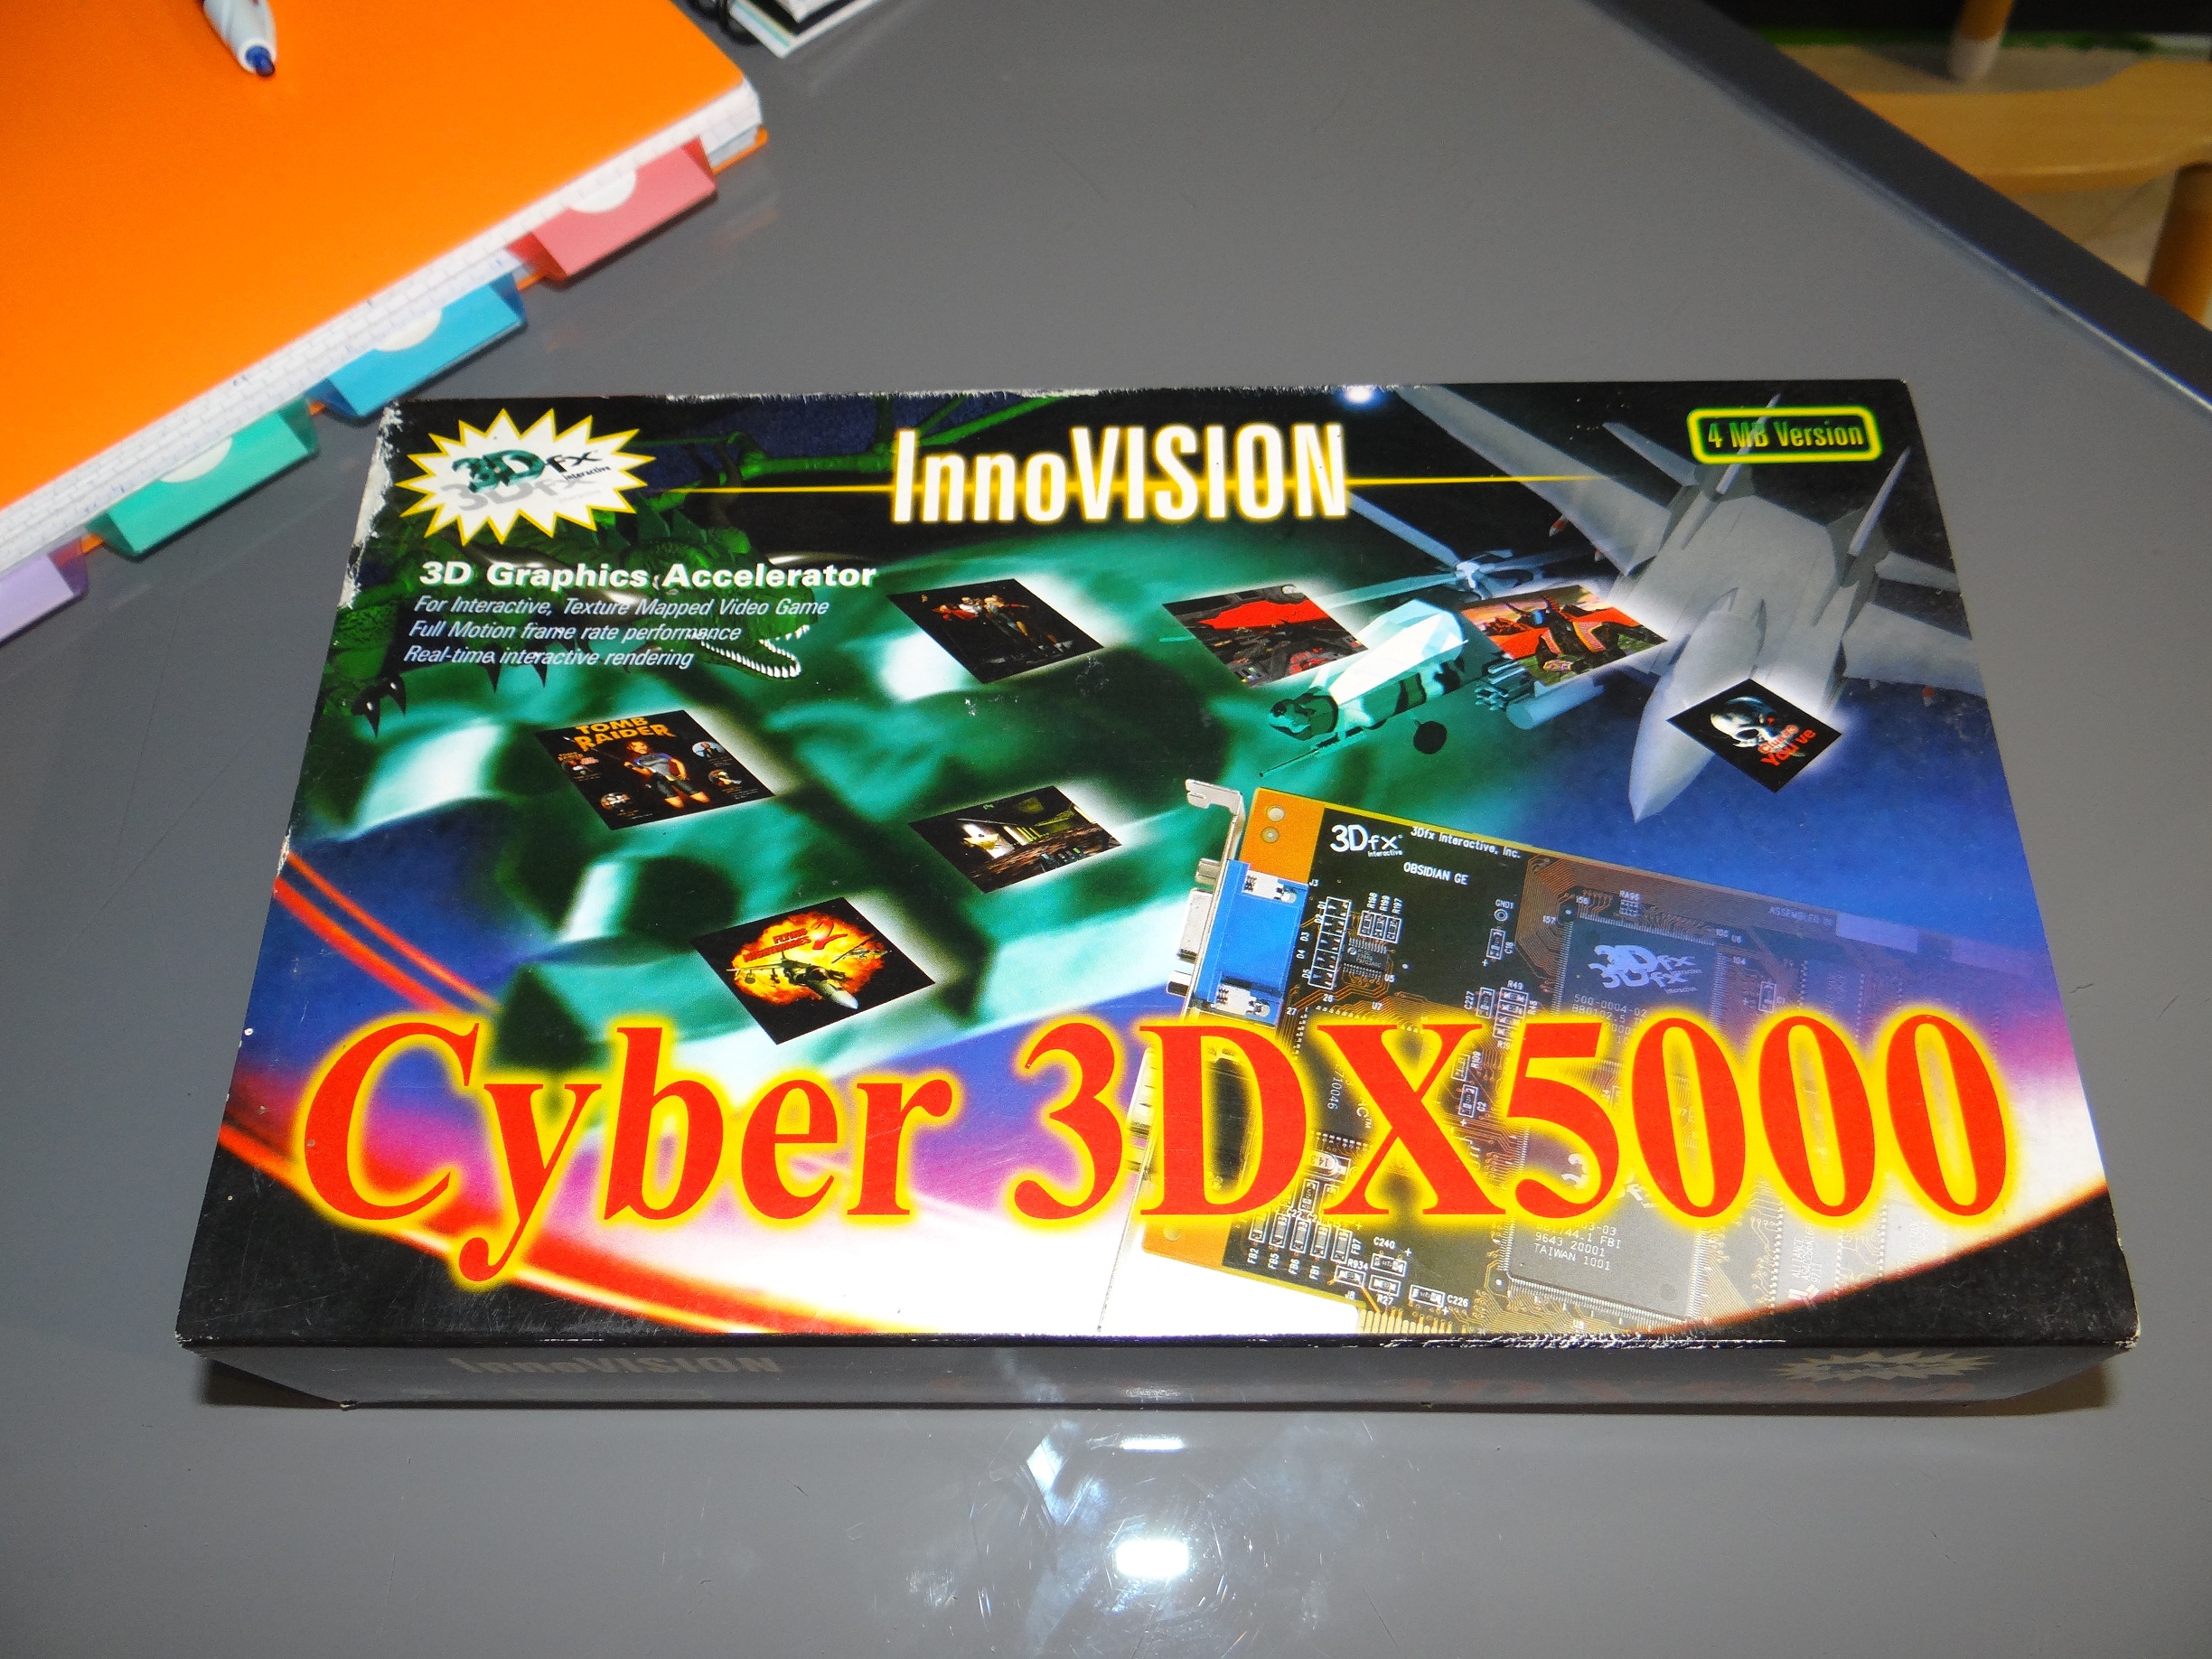 Cyber3DX5000_box.jpg